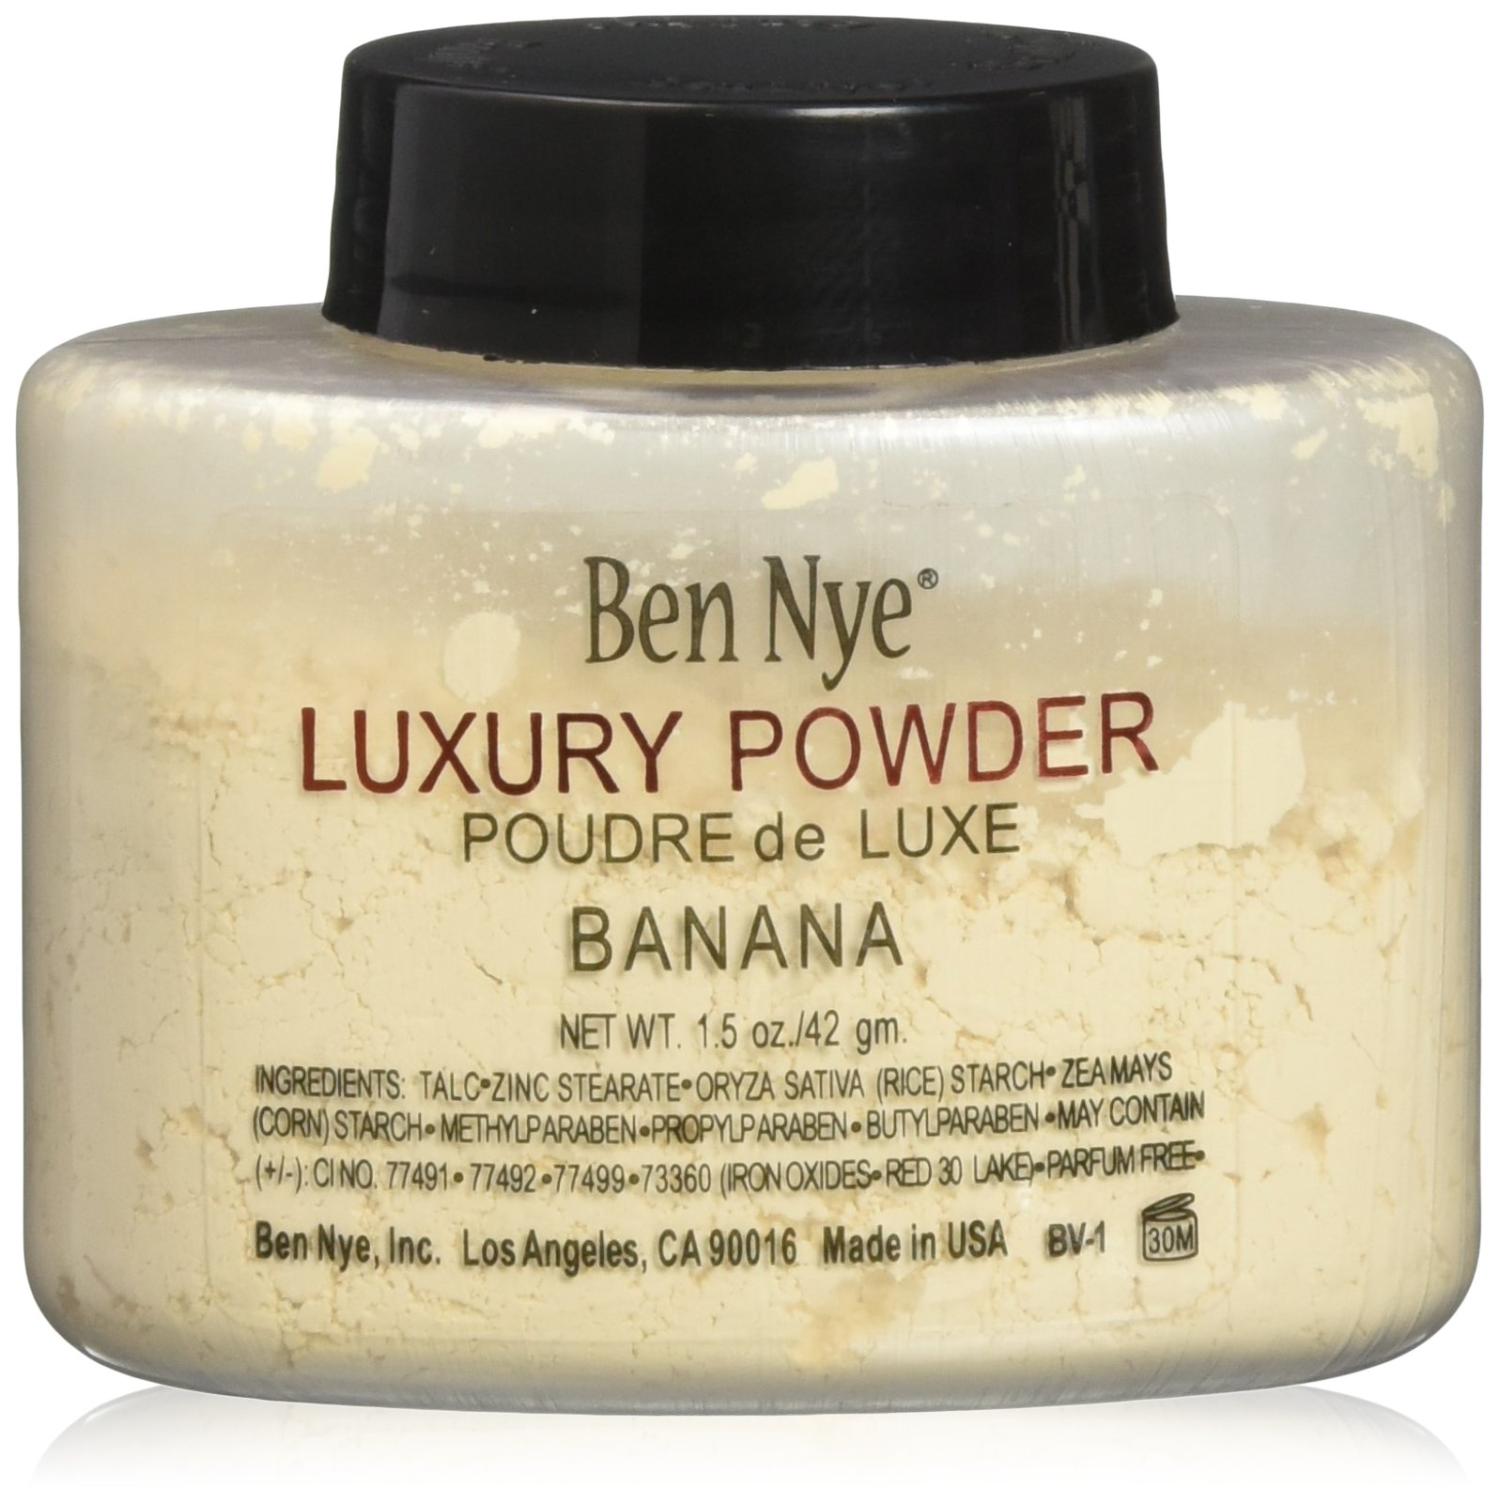 Ben Nye Luxury Powder Face Makeup